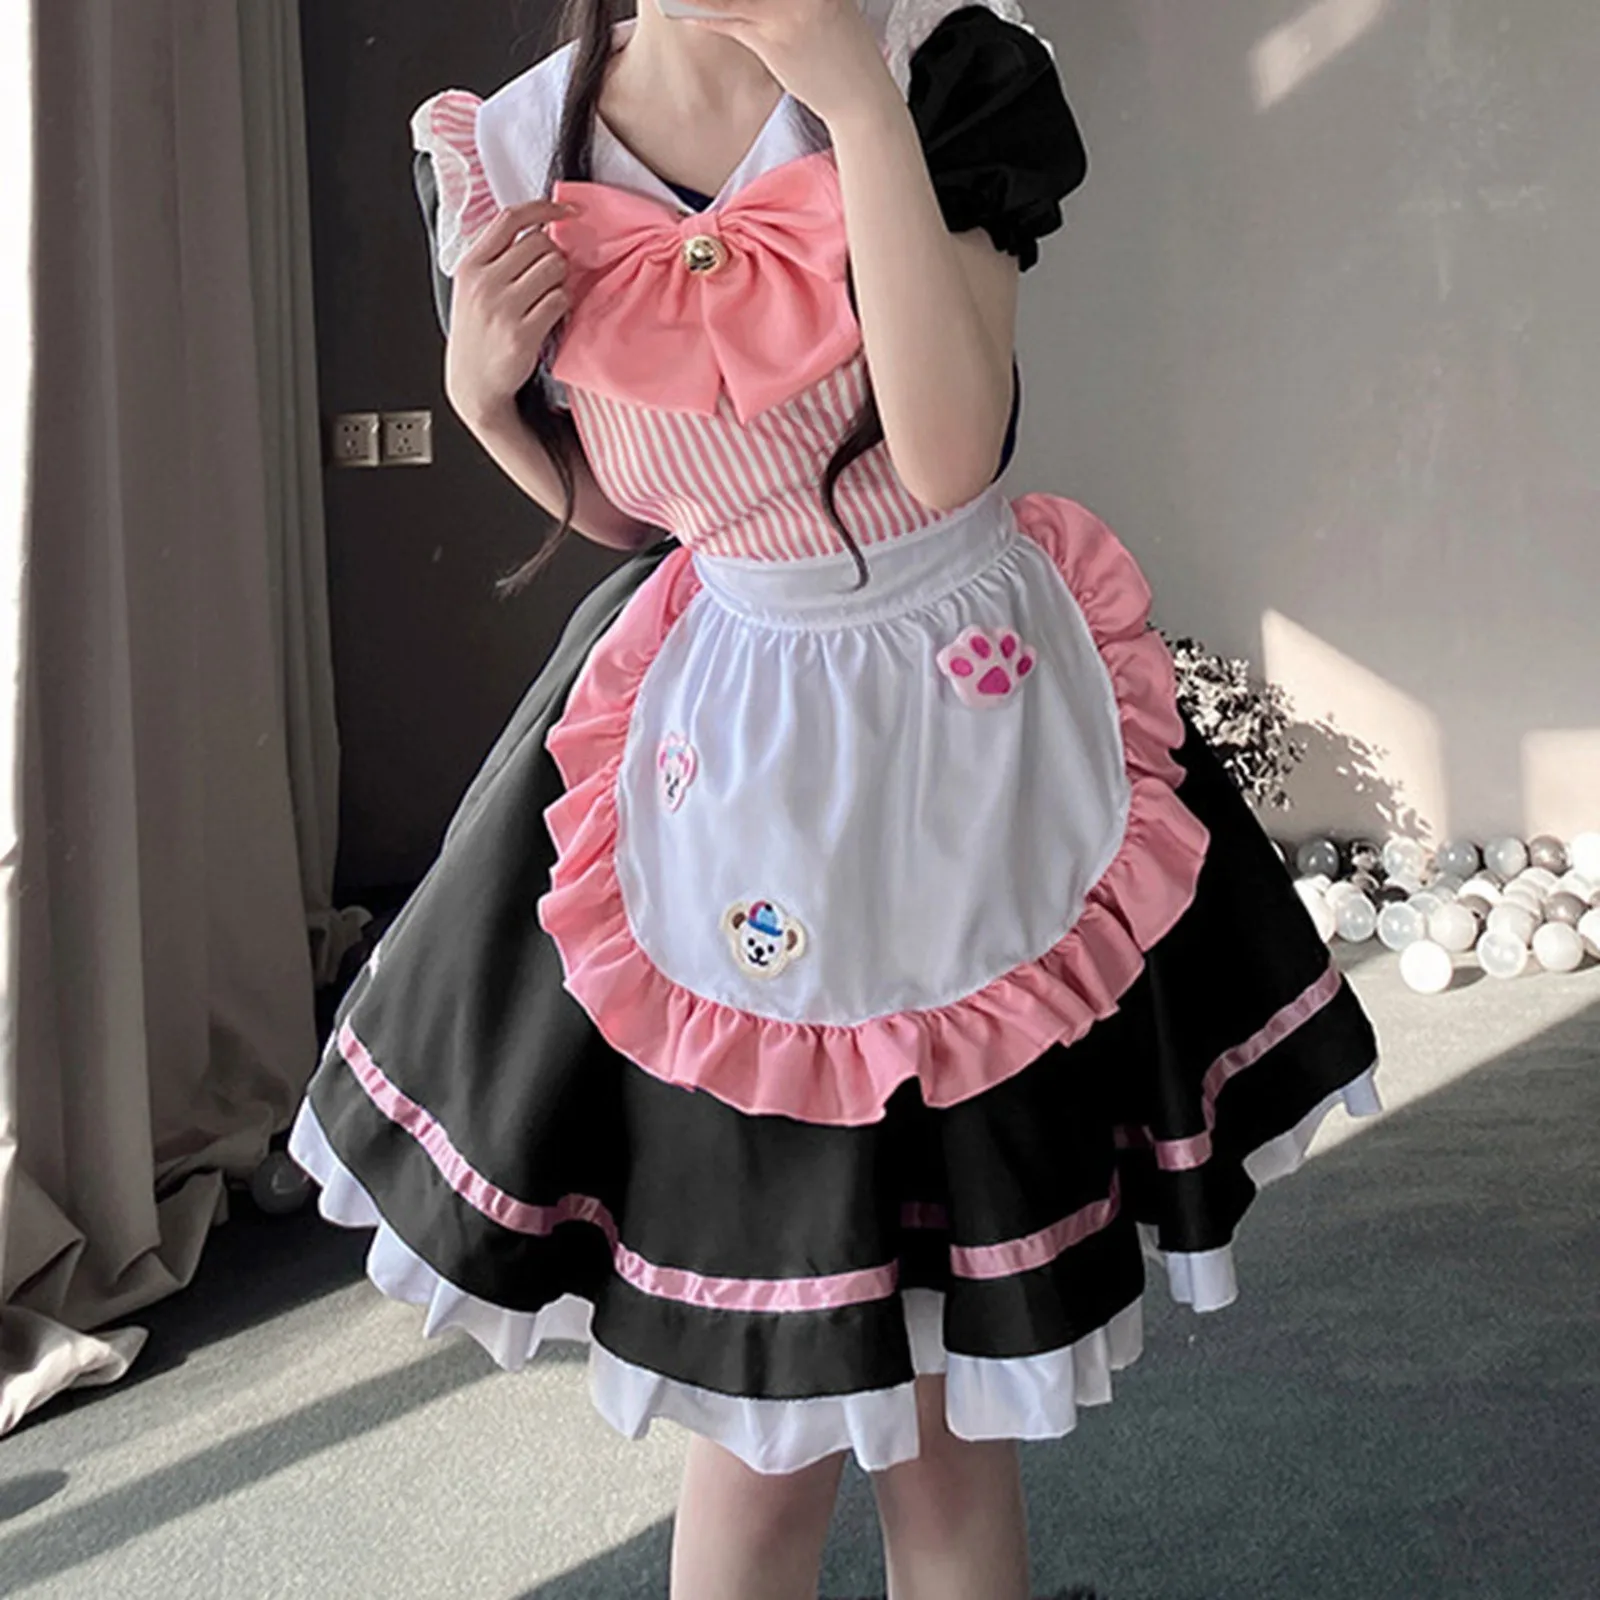 

Костюм горничной каваи из аниме «Лолита», костюм горничной розово-голубого цвета для косплея, Милая юбка в стиле «Лолита», костюм японского аниме для косплея